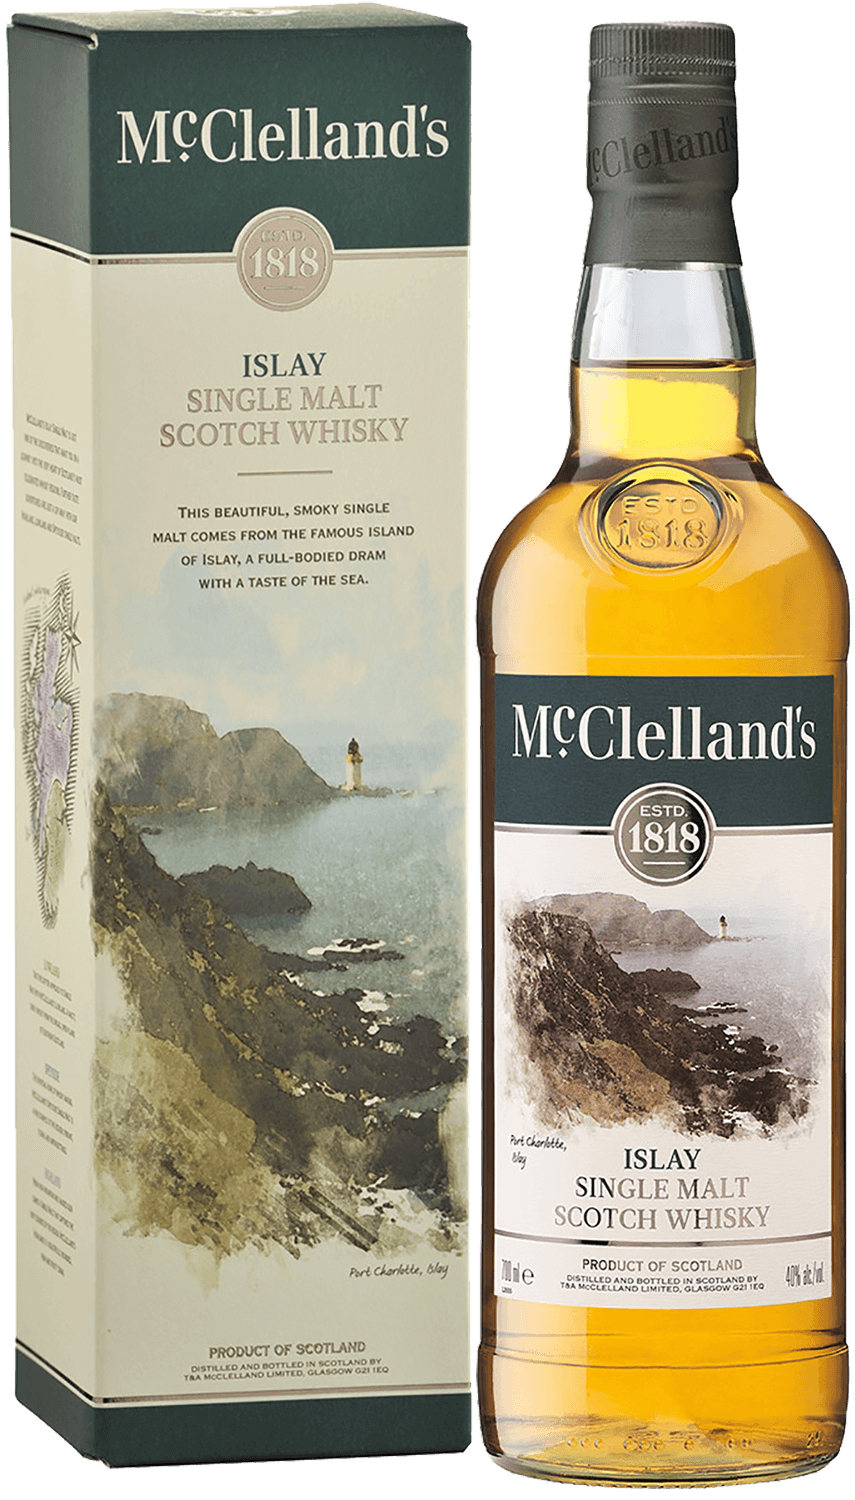 McClelland's Islay single malt scotch whisky (gift box) bruichladdich islay barley single malt scotch whisky gift box